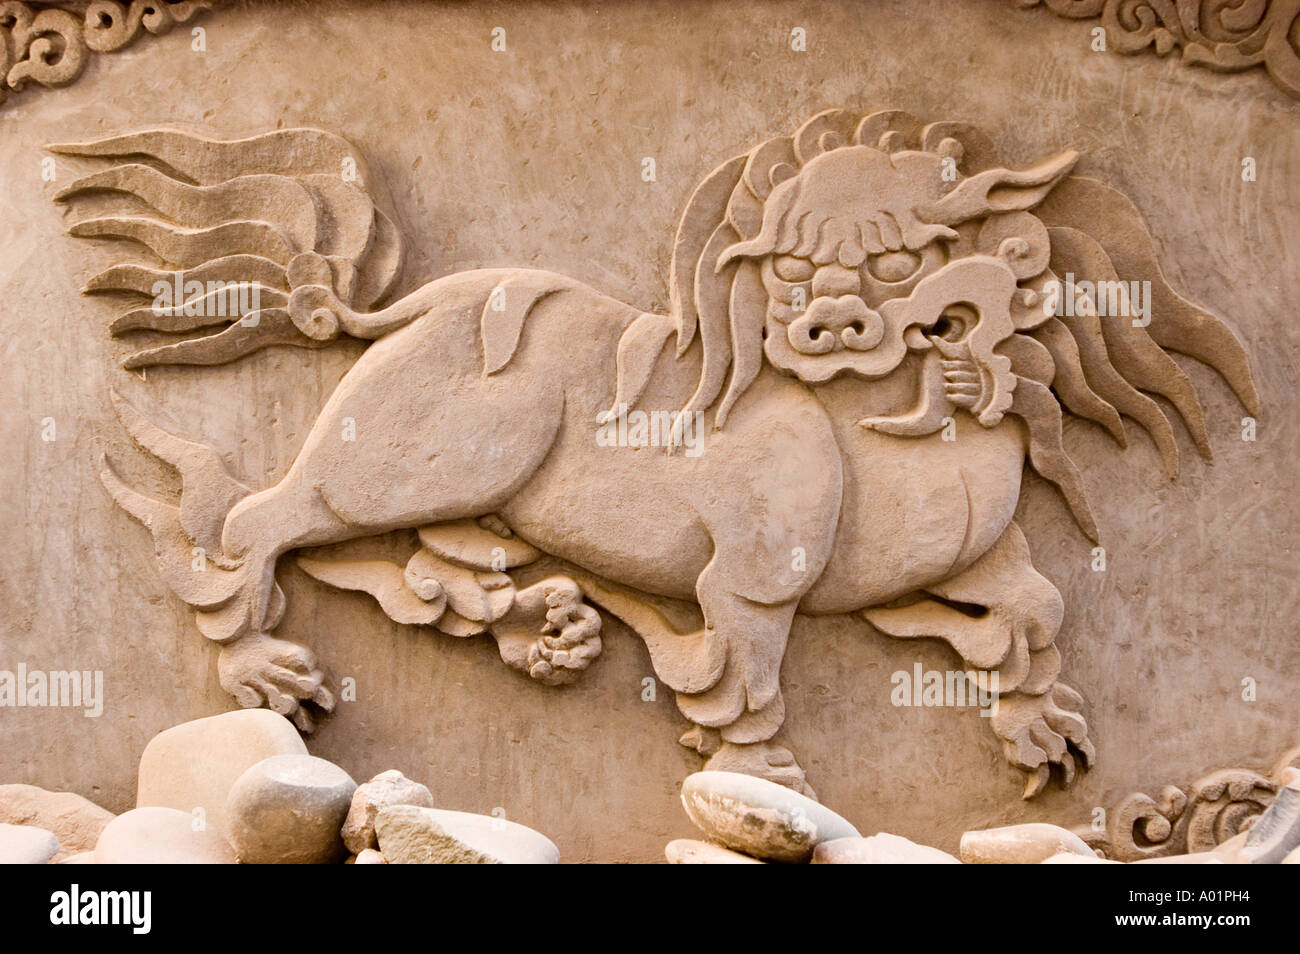 Lion des neiges stupa bas-relief dans la ville de Leh Ladakh Inde Banque D'Images